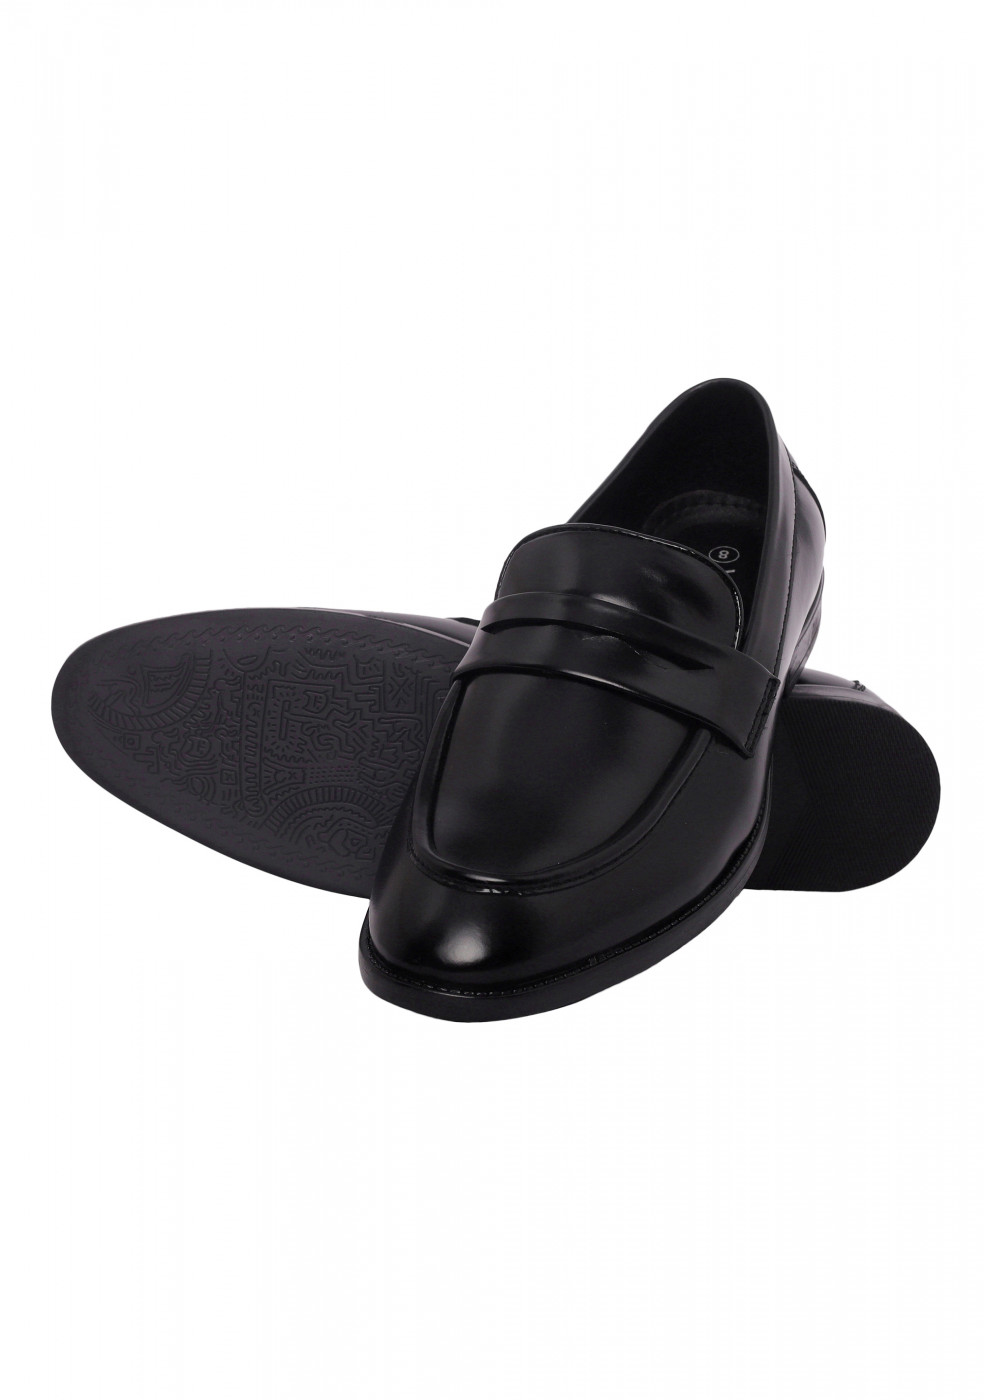 XSTOM Formal Black Color Shoes For Men